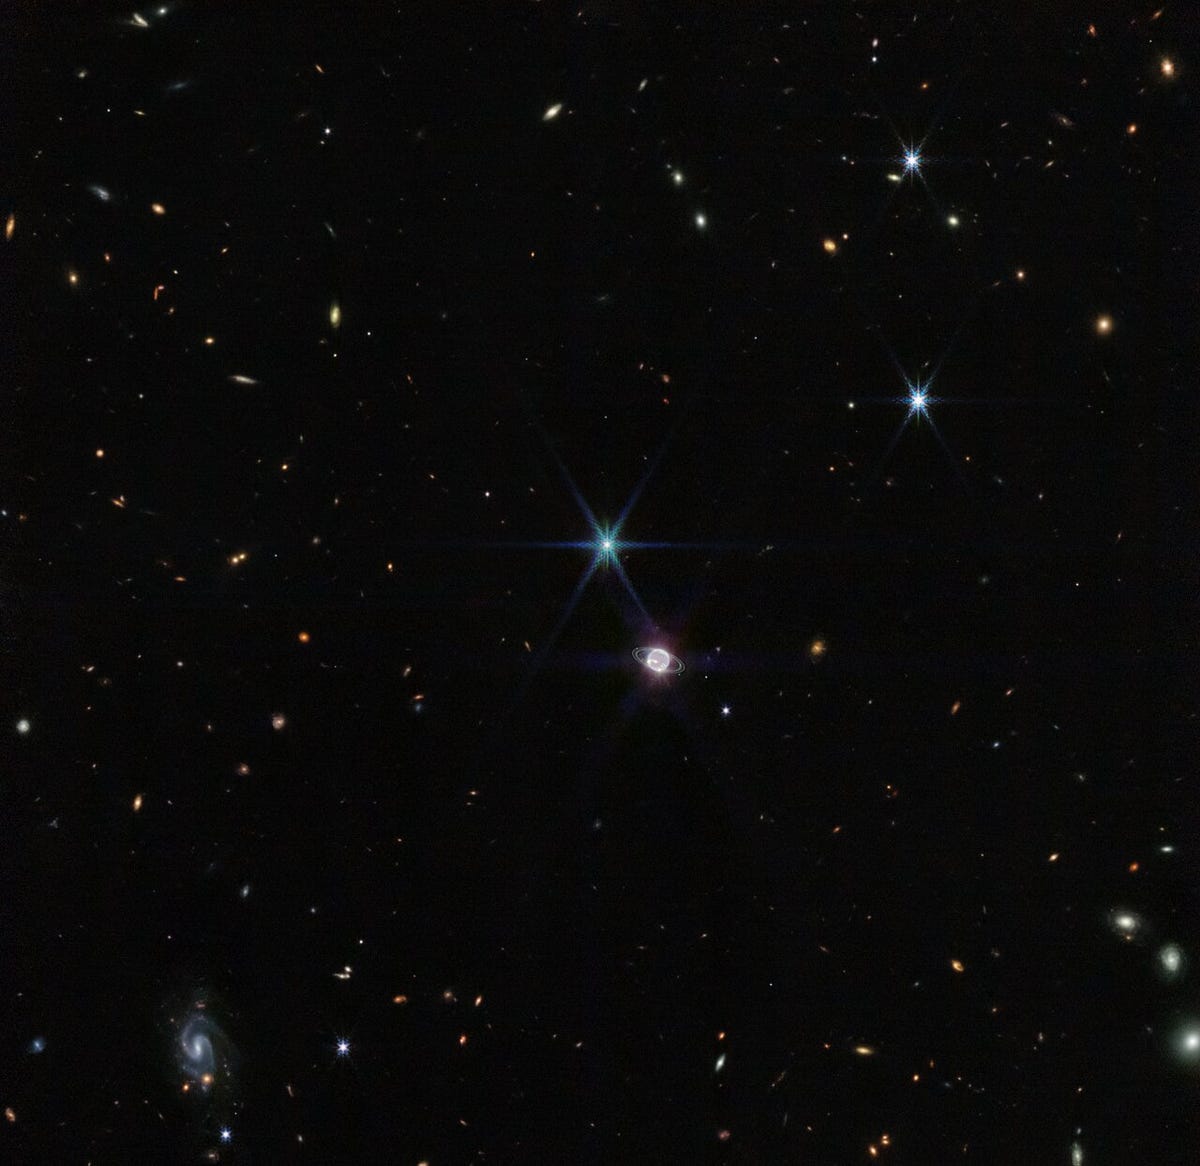 Em direção ao centro, um pouco a sudoeste, há um círculo brilhante representando Netuno.  Brilhantes anéis fracos também foram vistos ao redor do globo.  A noroeste deste globo está um brilhante pedaço de terra azulado de seis pontas que representa uma das luas de Netuno.  Toneladas de manchas e redemoinhos no fundo, contra a extensão escura do espaço, apontam para galáxias em todo o universo.